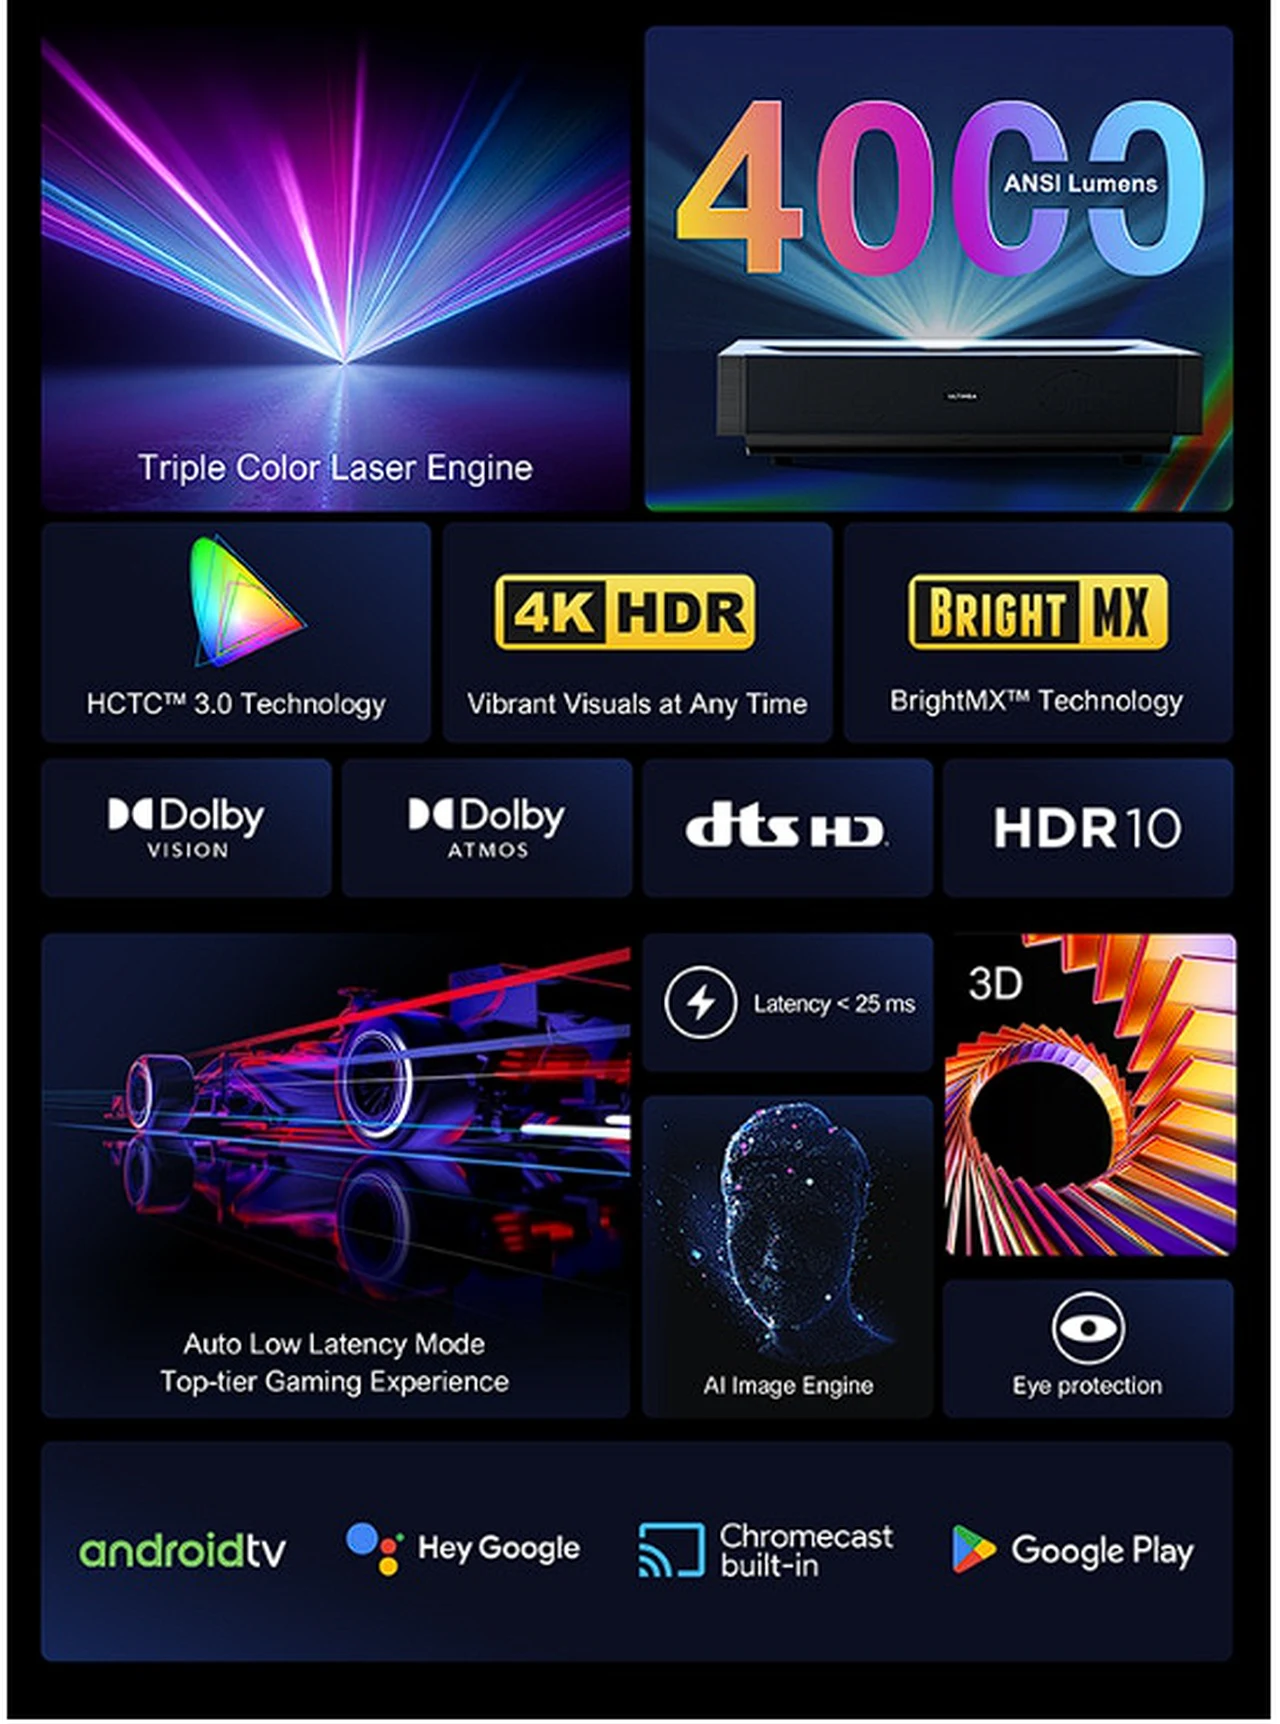 4K triple laser TV features